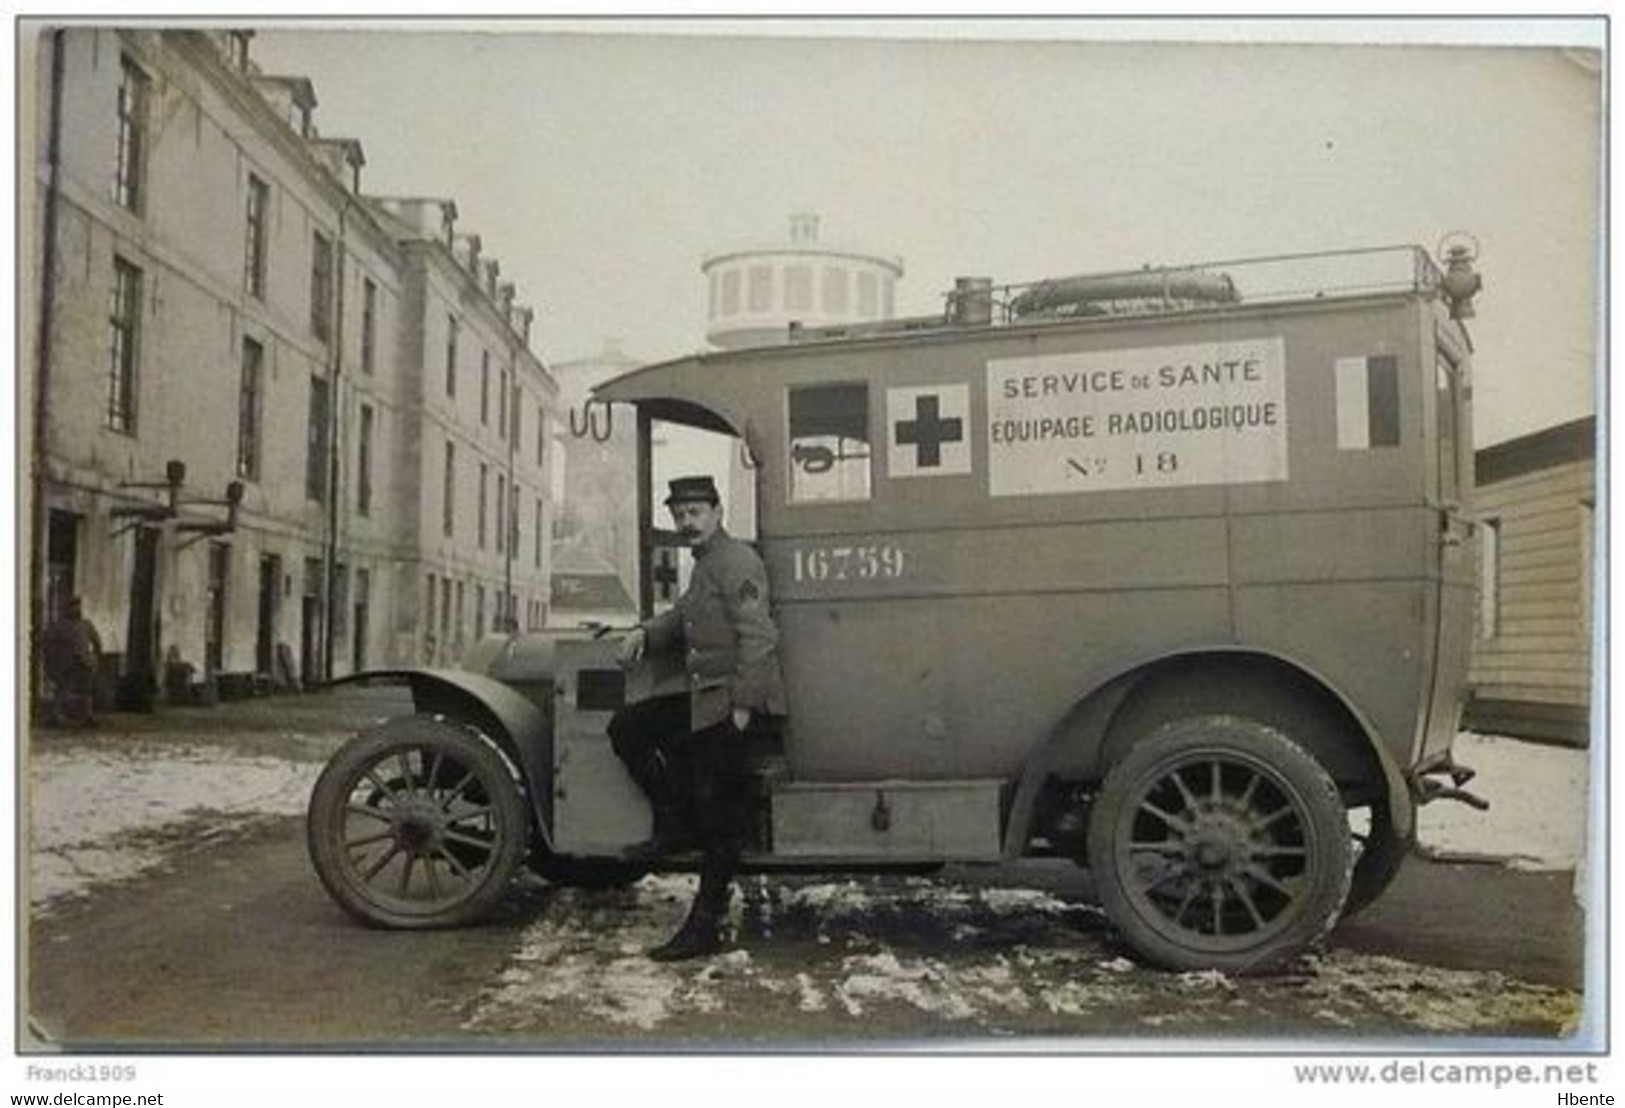 SERVICE DE SANTE EQUIPAGE RADIOLOGIQUE N° 18 - Petite Curie (Photo) - Automobile